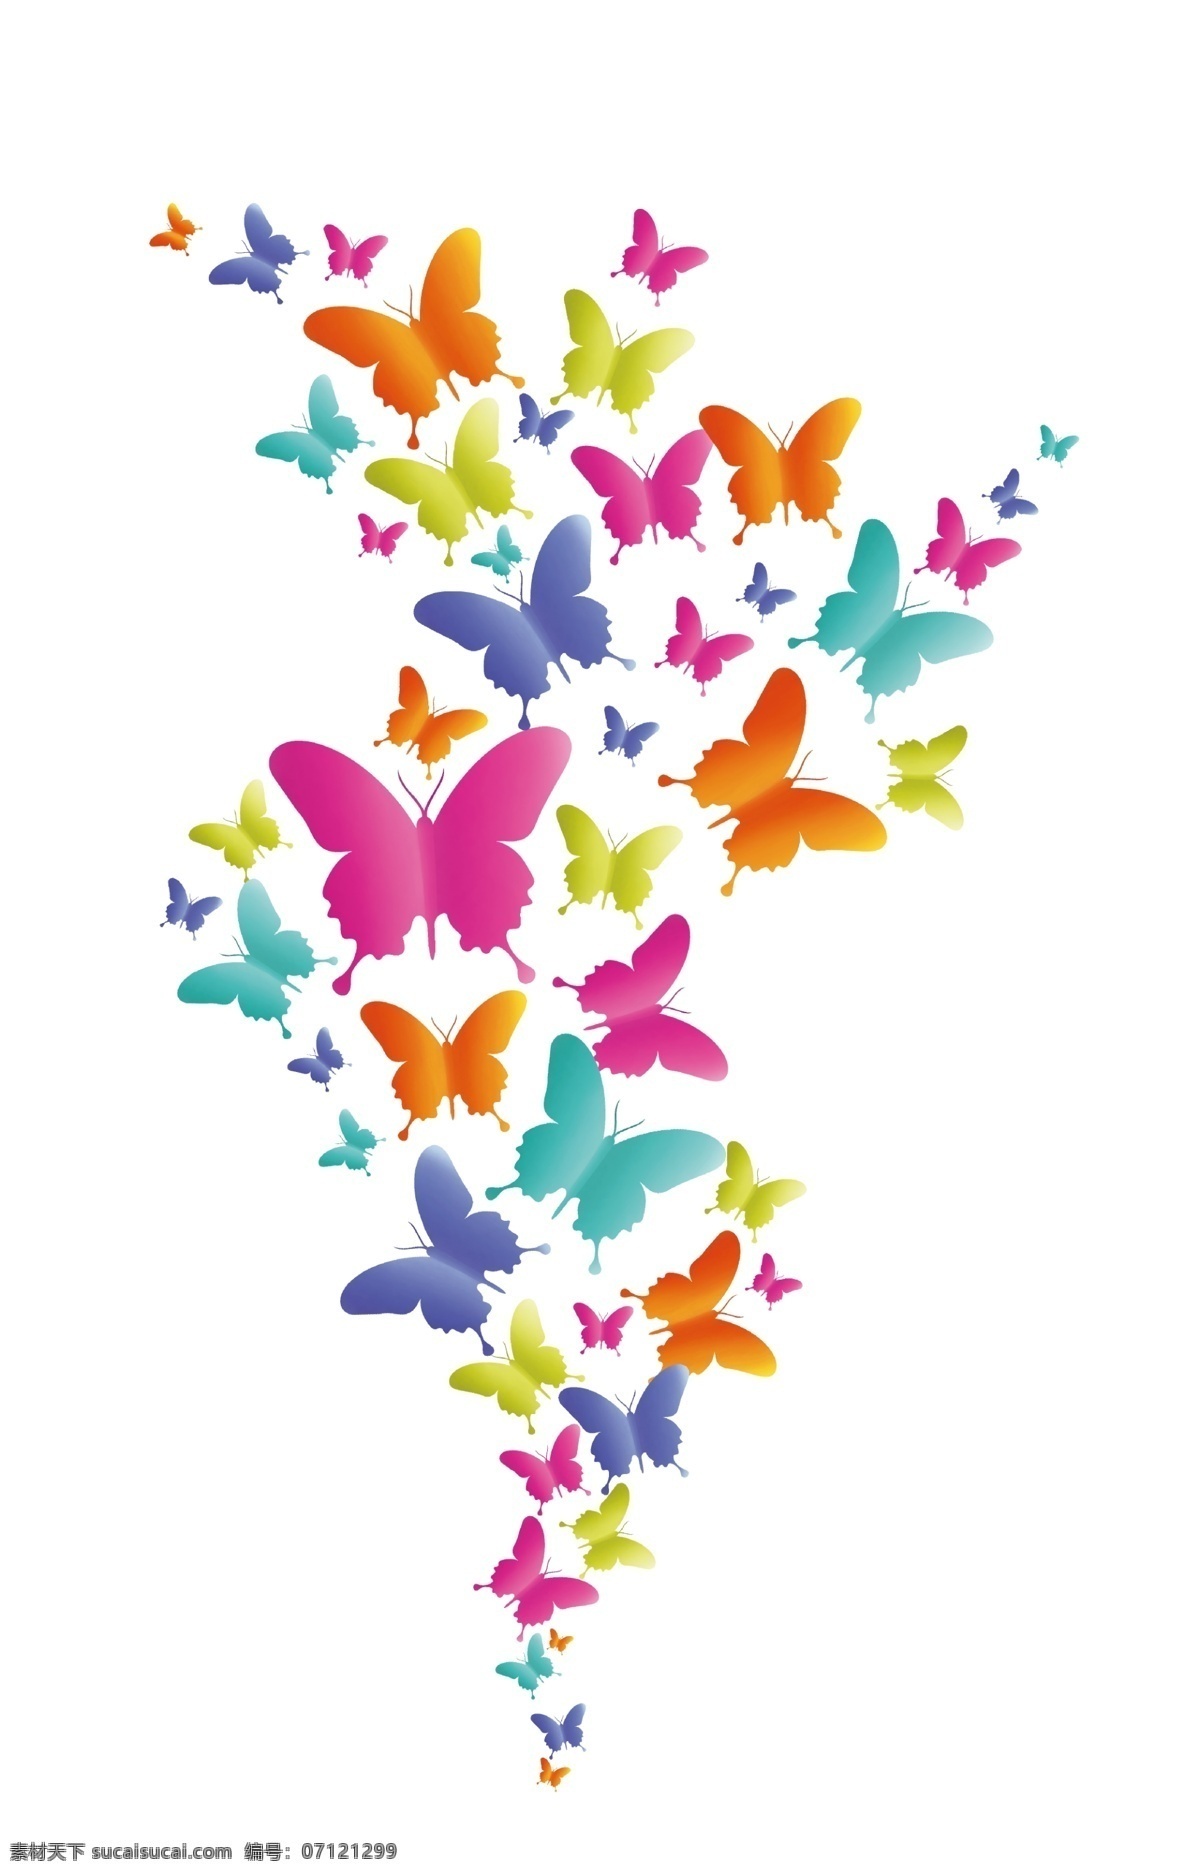 彩色蝴蝶 定位 裁片 彩色 手绘 蝴蝶 分层